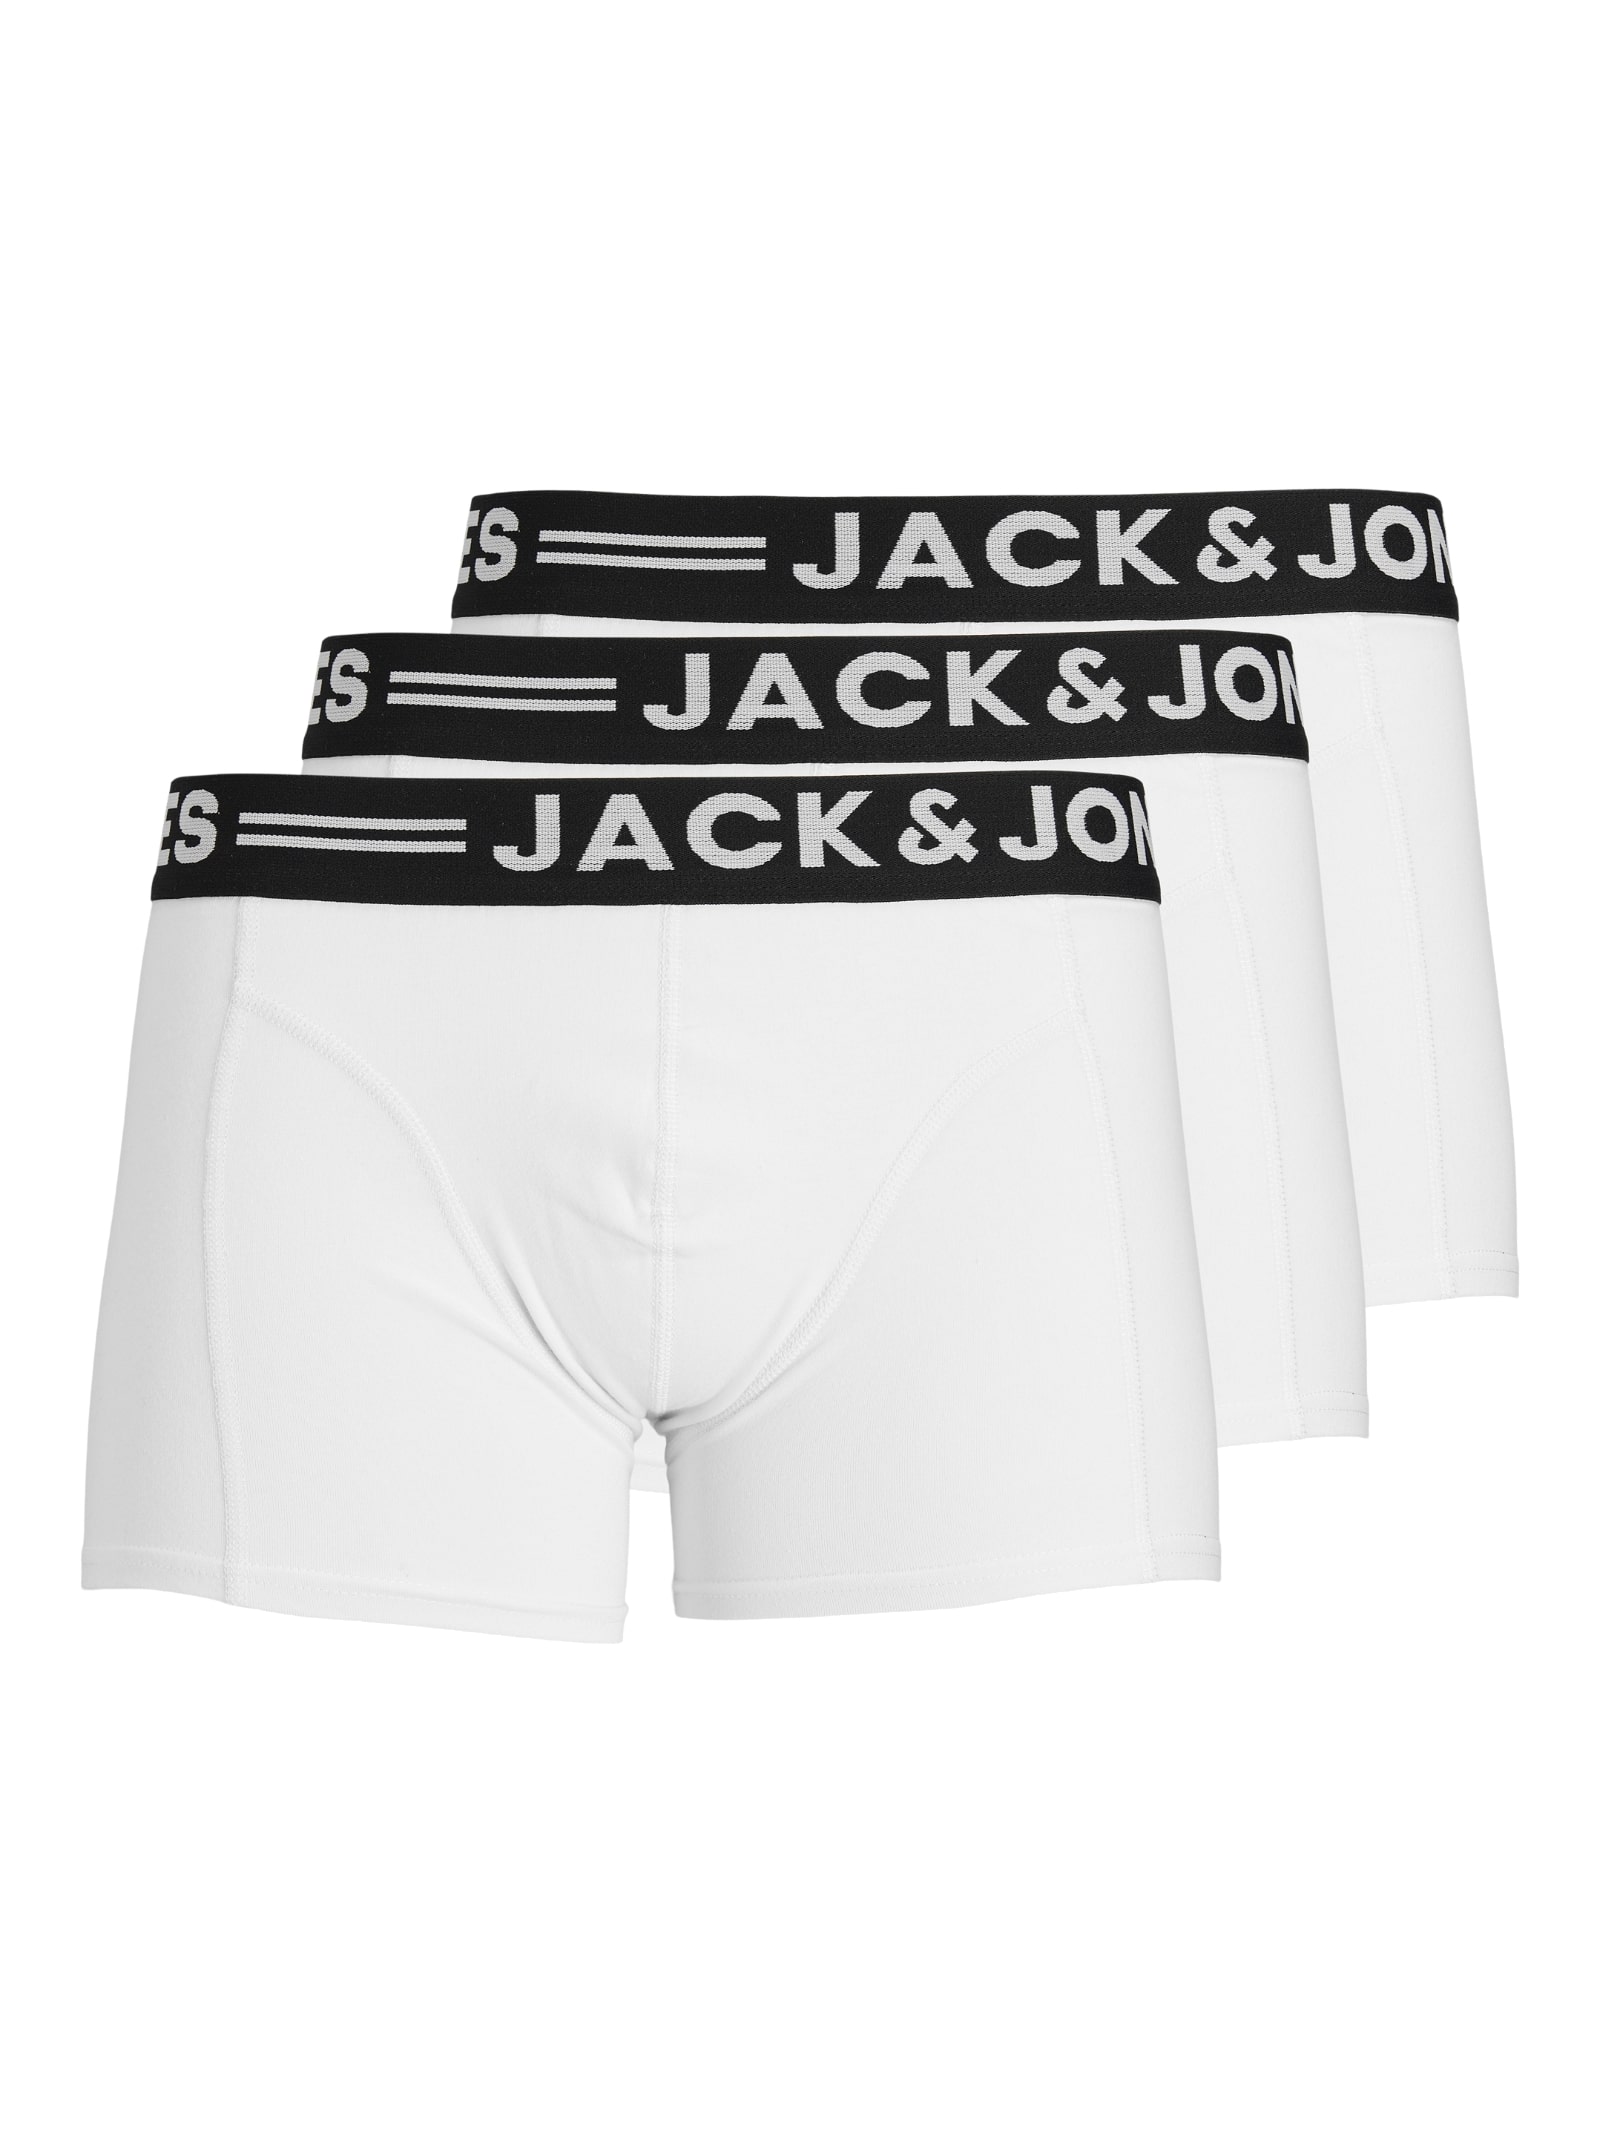 MEN FASHION Underwear & Nightwear Jack & Jones Underpant discount 57% Black L 